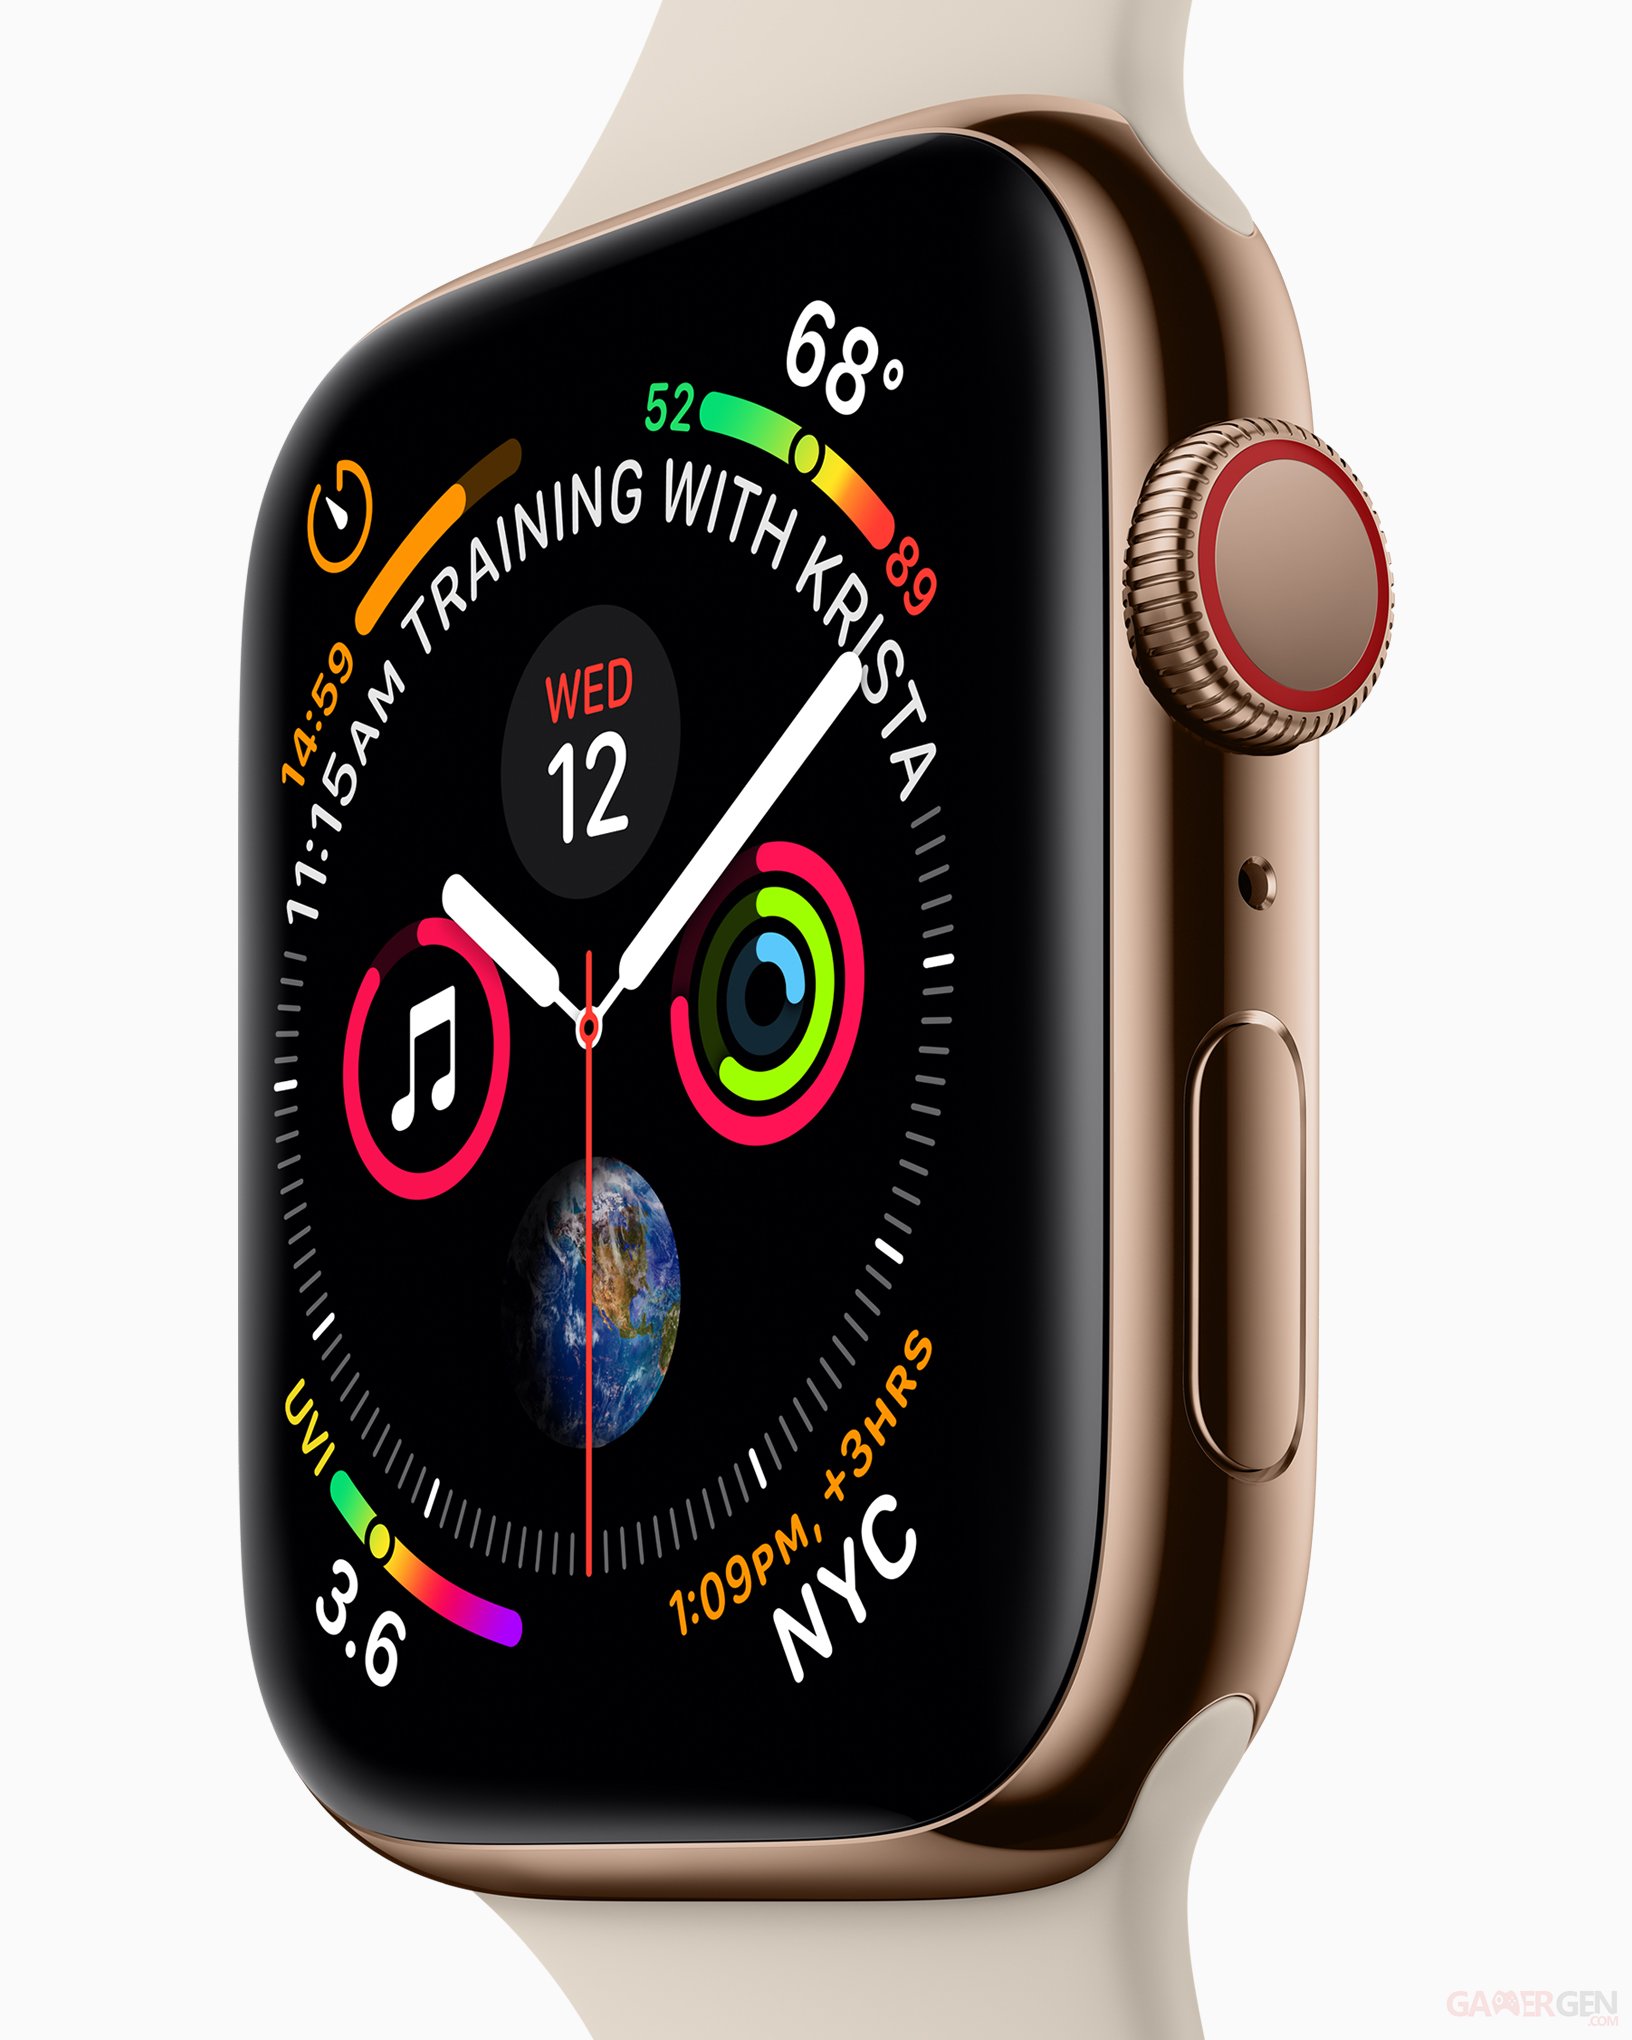 Apple Watch Series 4 prix, date de sortie et nouveautés